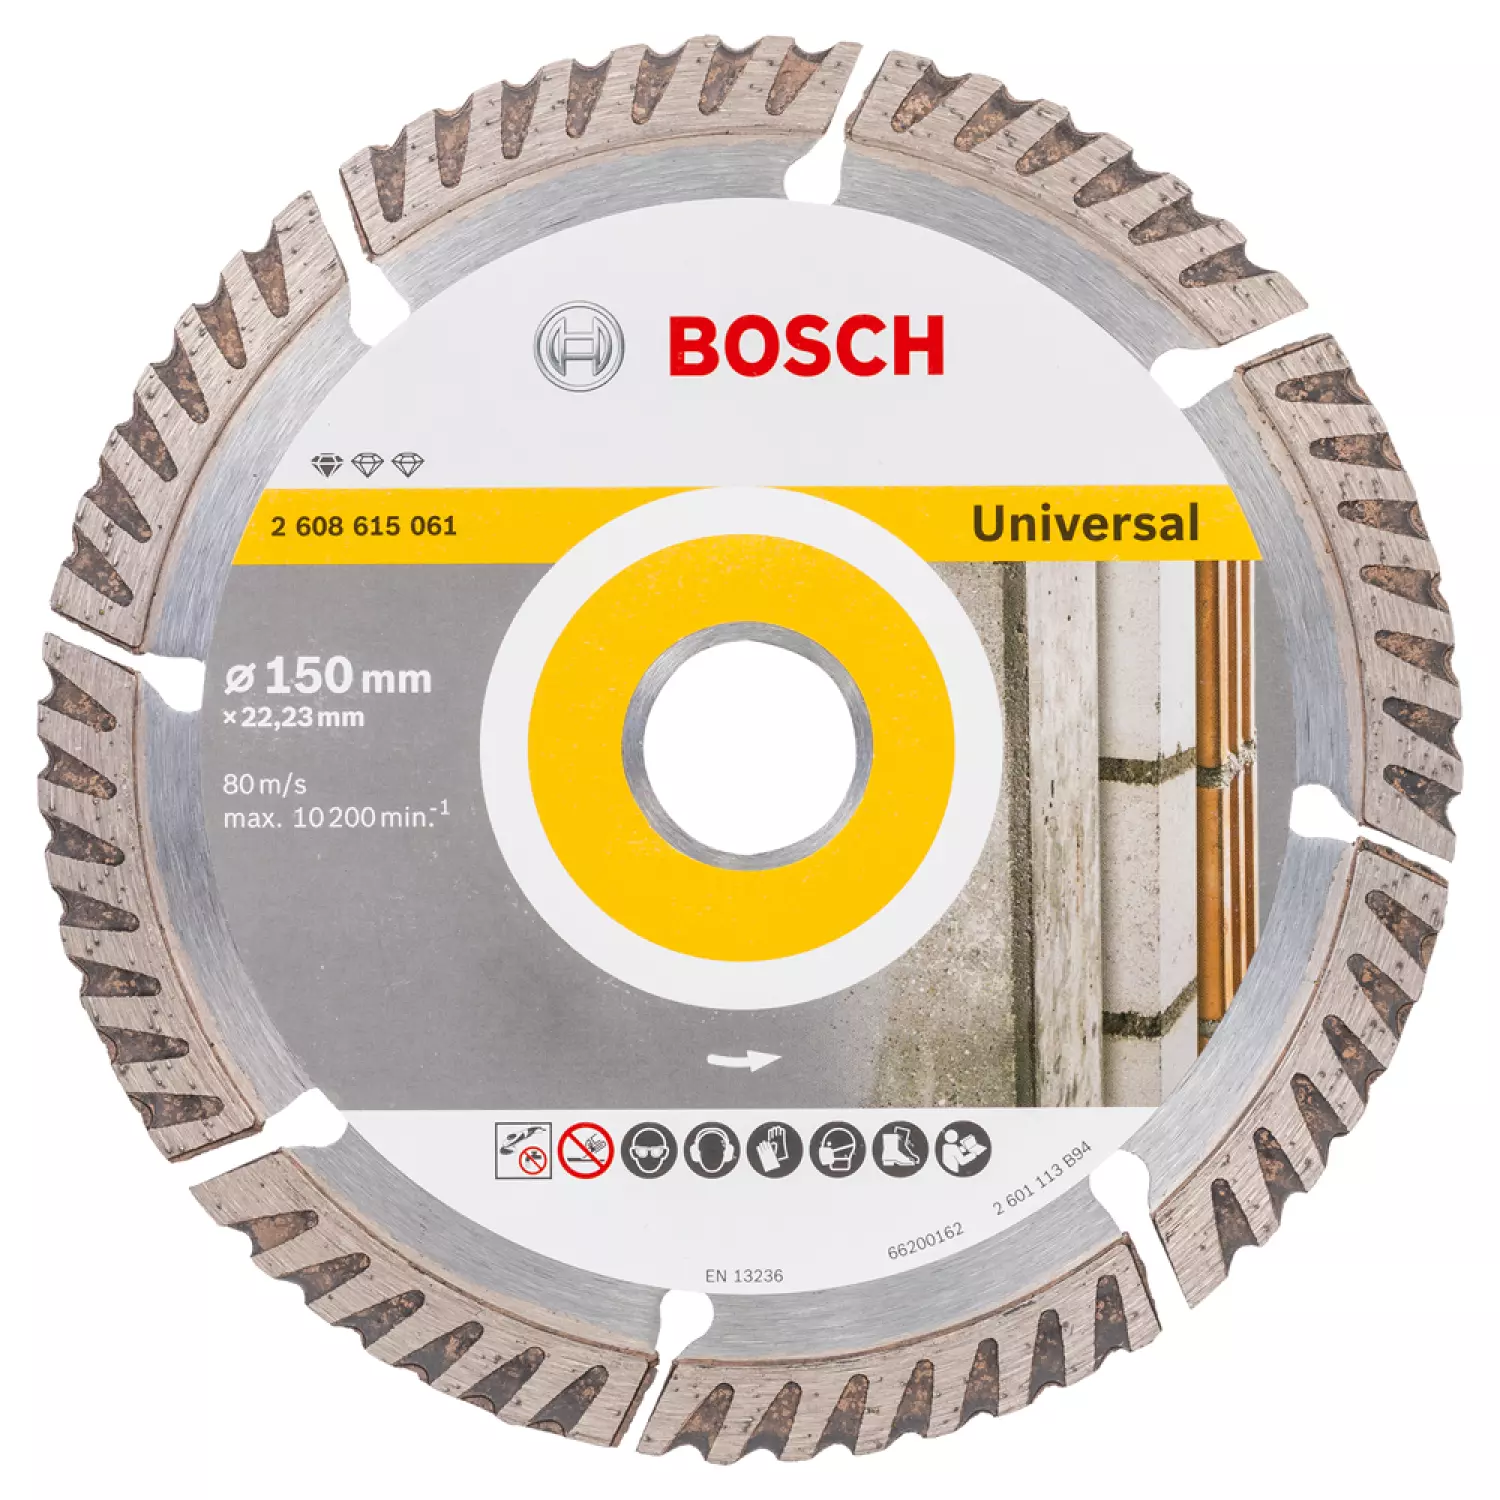 Bosch 2608615061 Diamantdoorslijpschijf - 150 x 22,23mm - universeel